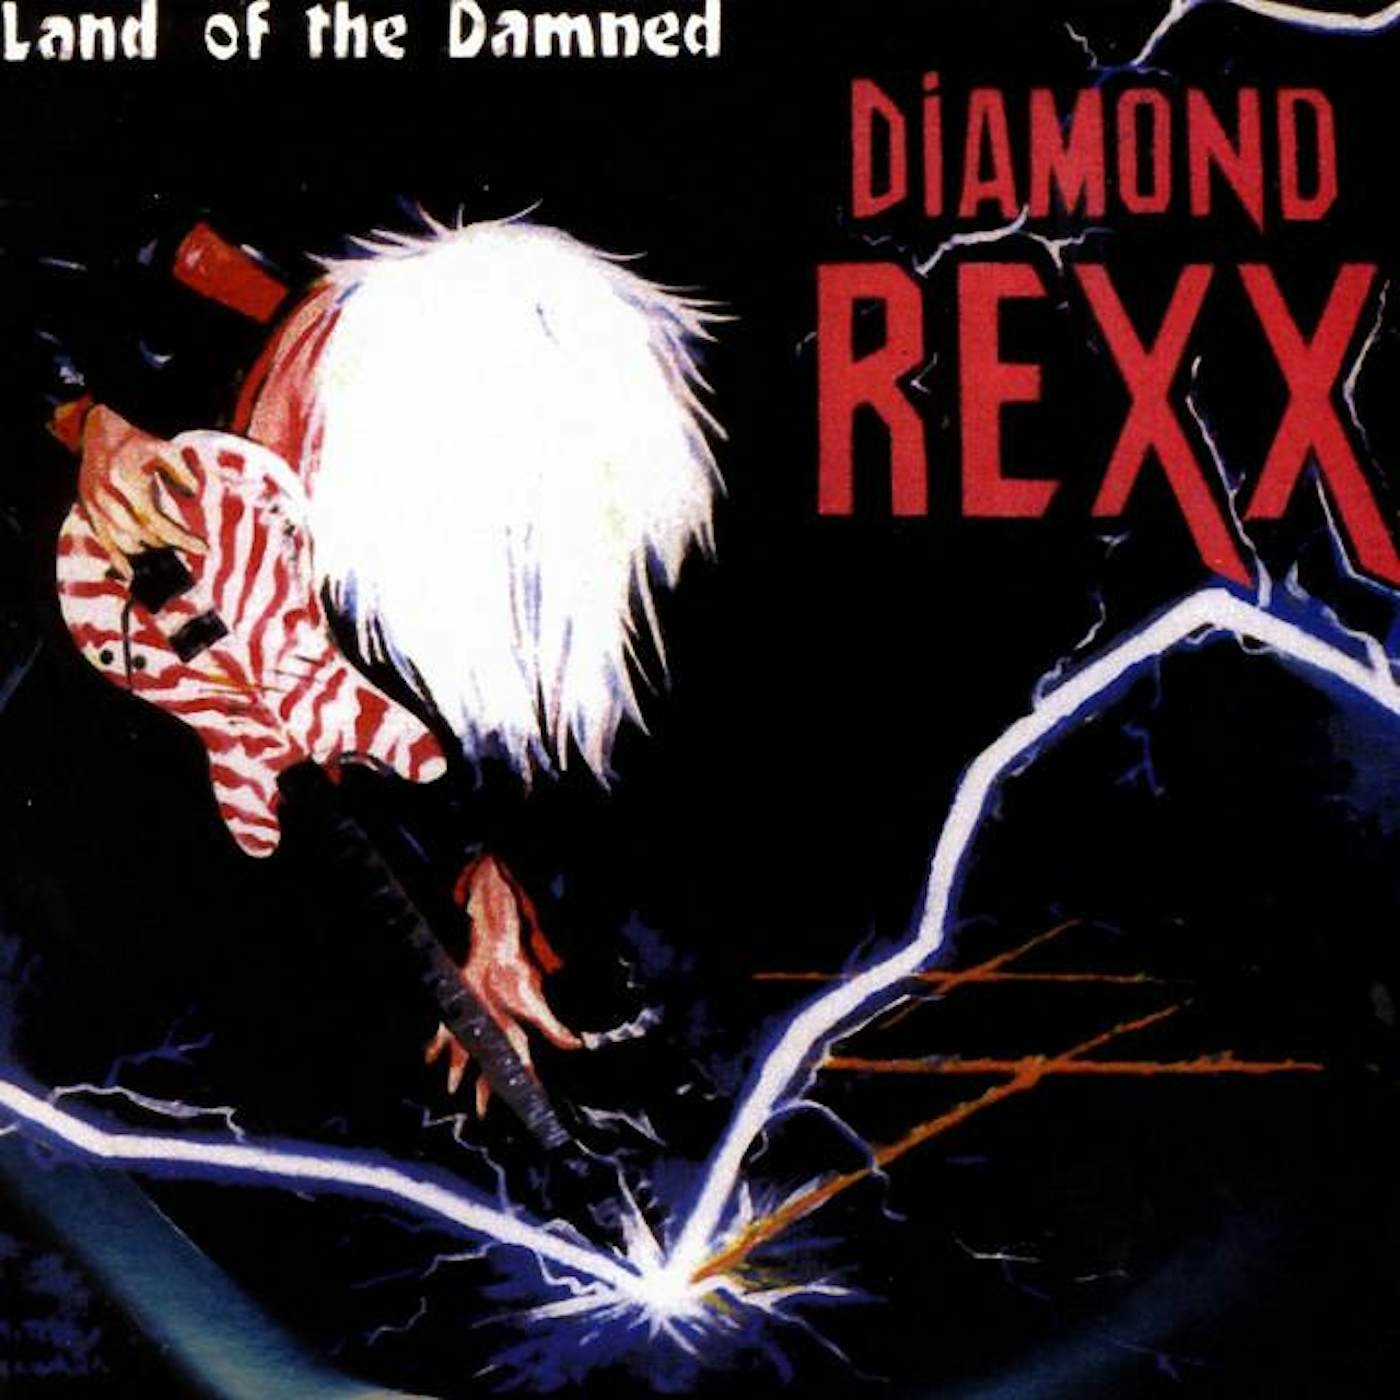 Diamond Rexx